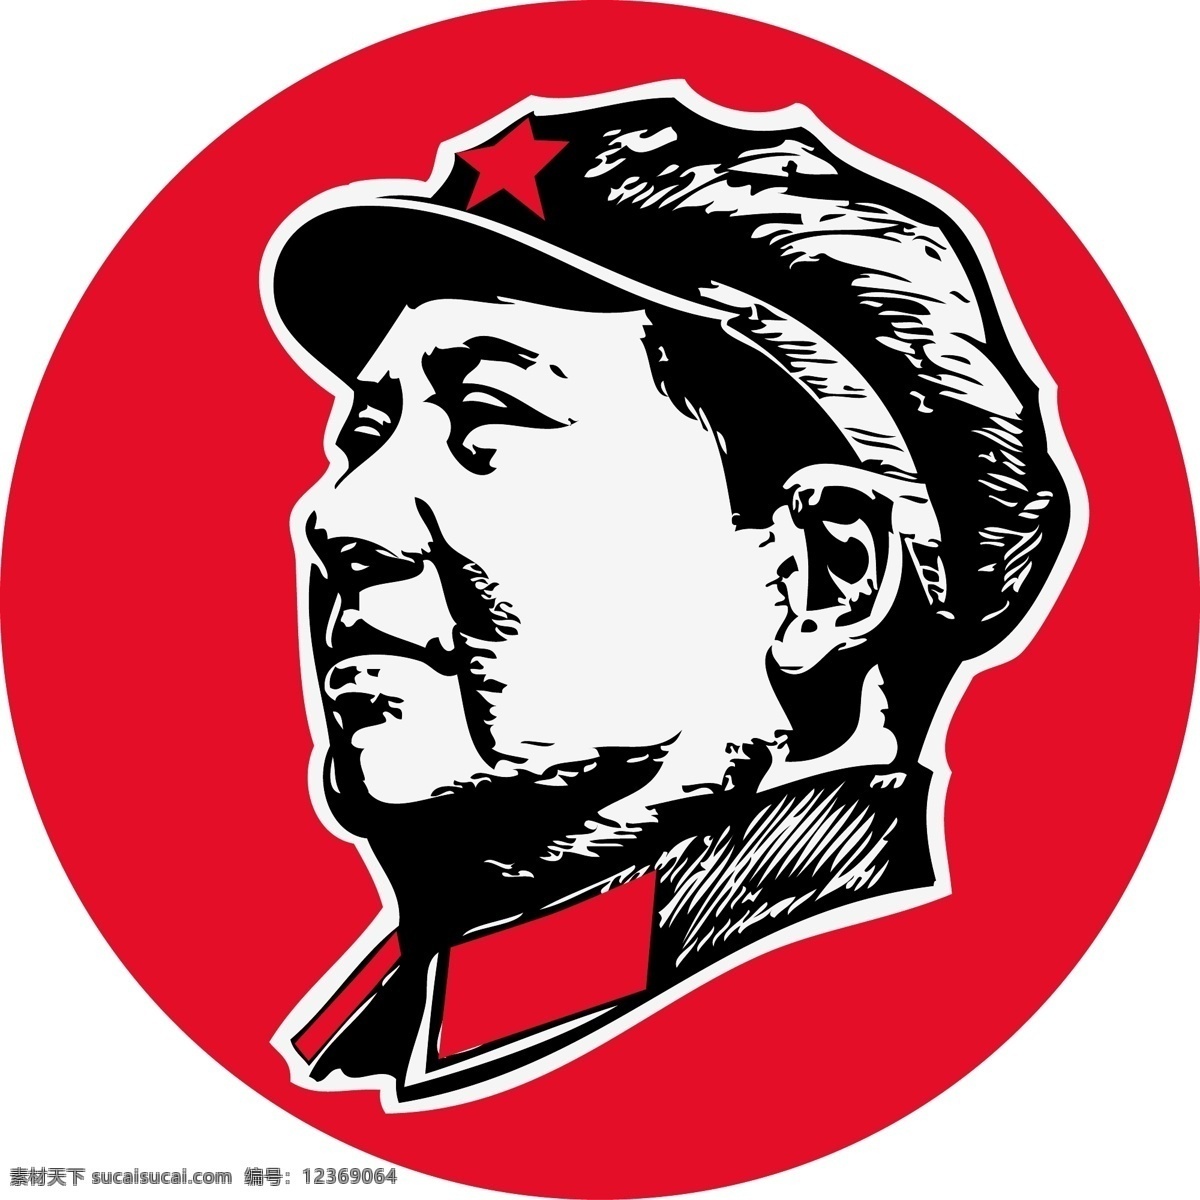 毛主席头像 毛主席 毛泽东 主席头像 毛主席像 革命 红军 军装 红五星 伟人 领袖 插画 剪影 矢量图 艺术 共产党 中国 剪纸作品 文化艺术 传统文化